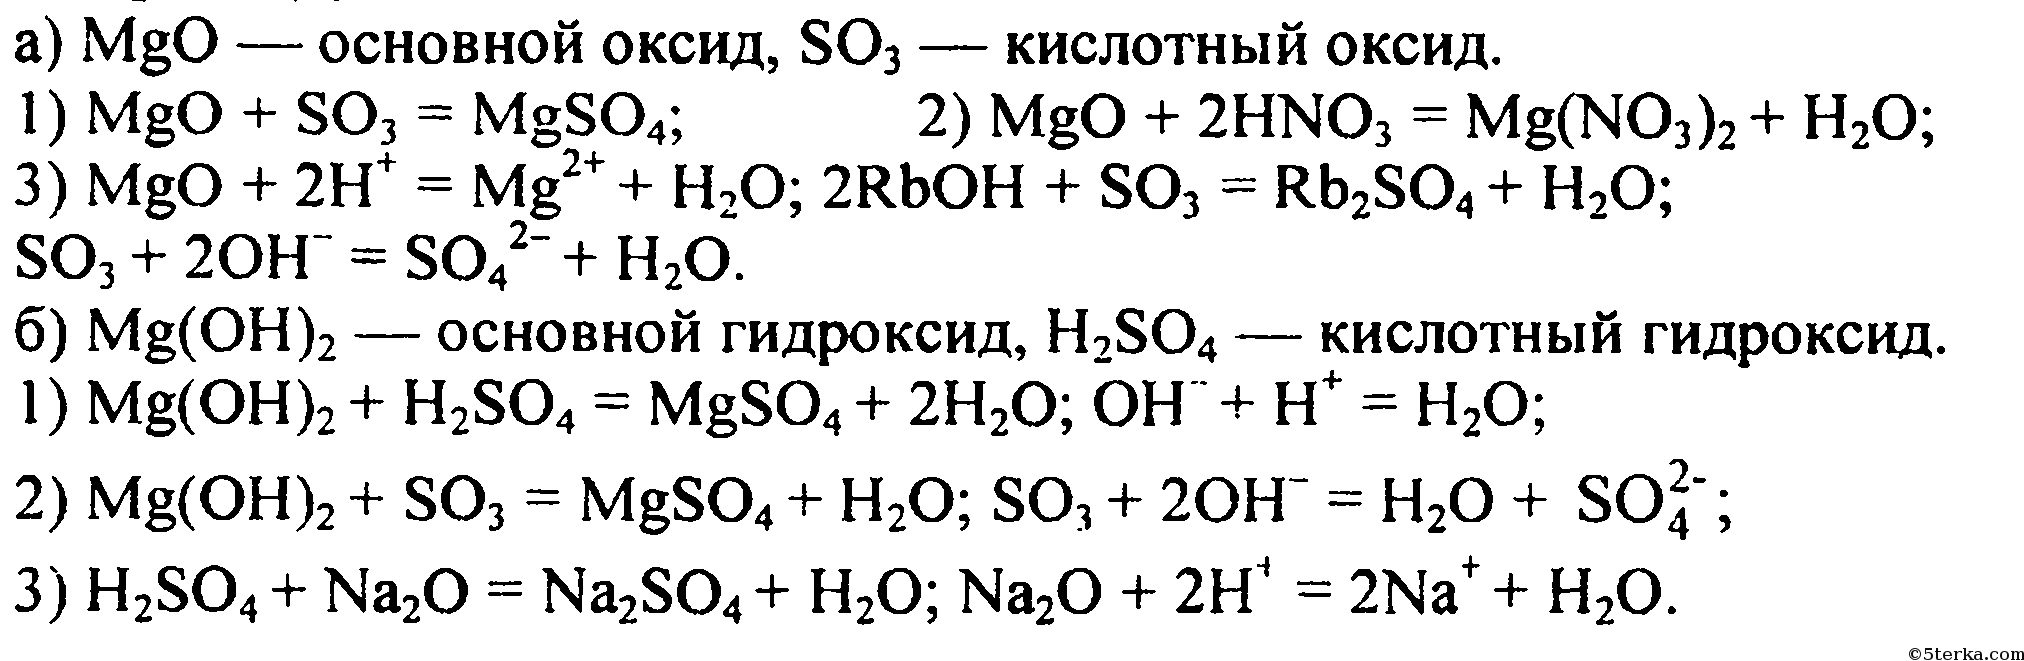 Завершите следующие химические реакции. Уравнение химической реакции MGO И so3. Химические уравнения магний хлор 2. Цепочка реакций с магнием. MGO+h2so4 уравнение реакции.